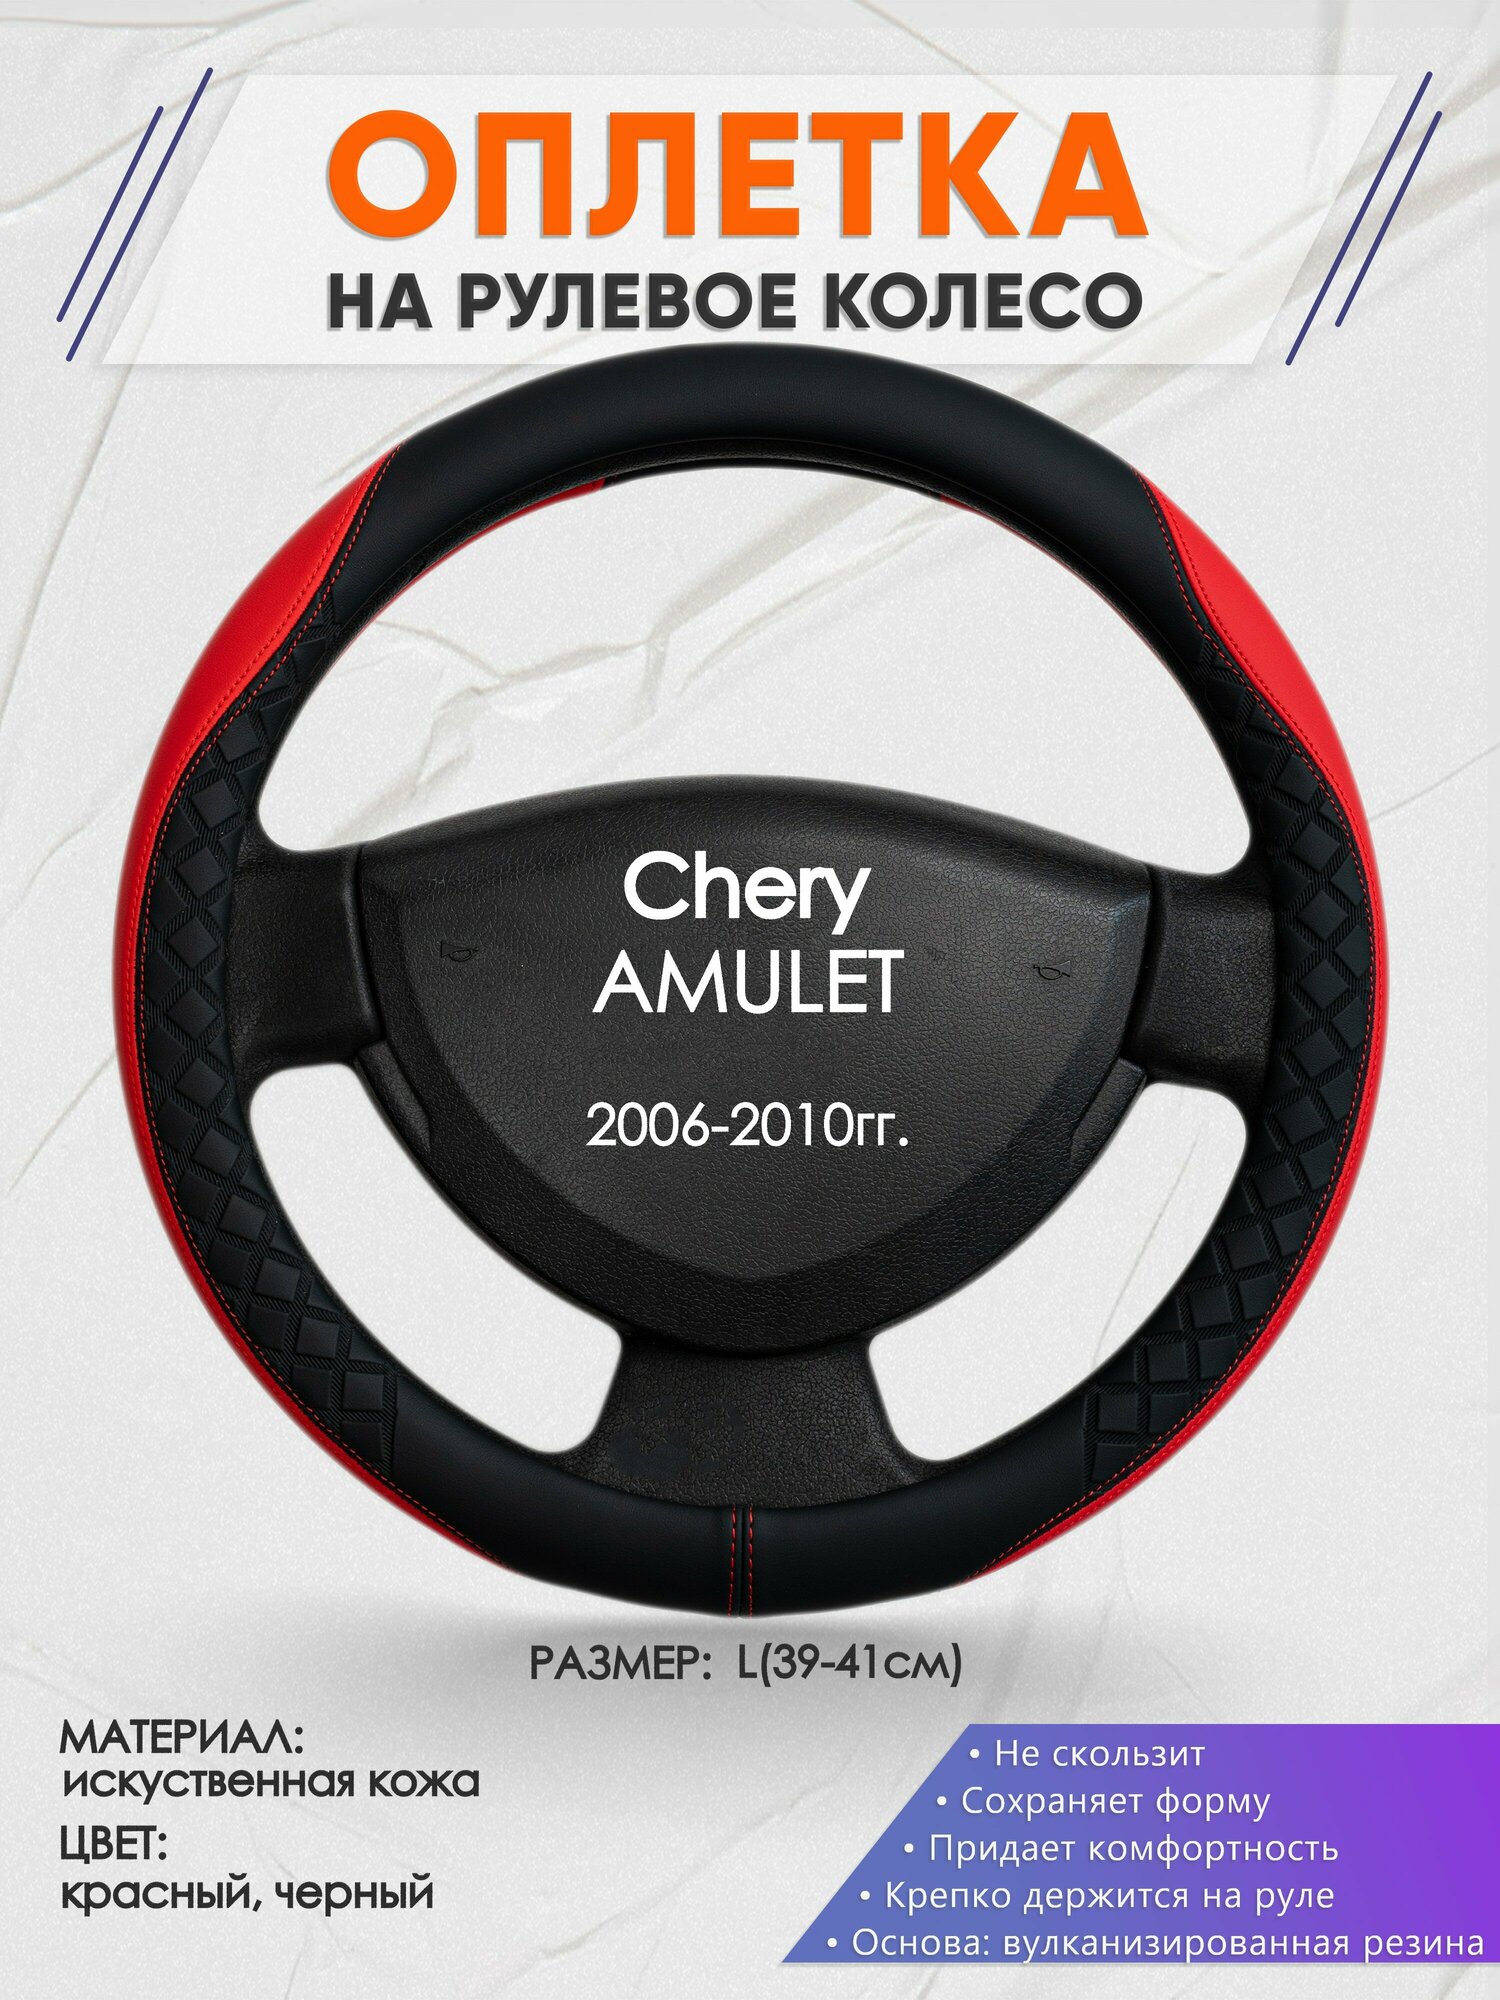 Оплетка на руль для Chery AMULET(Чери амулет) 2006-2010, L(39-41см), Искусственная кожа 93